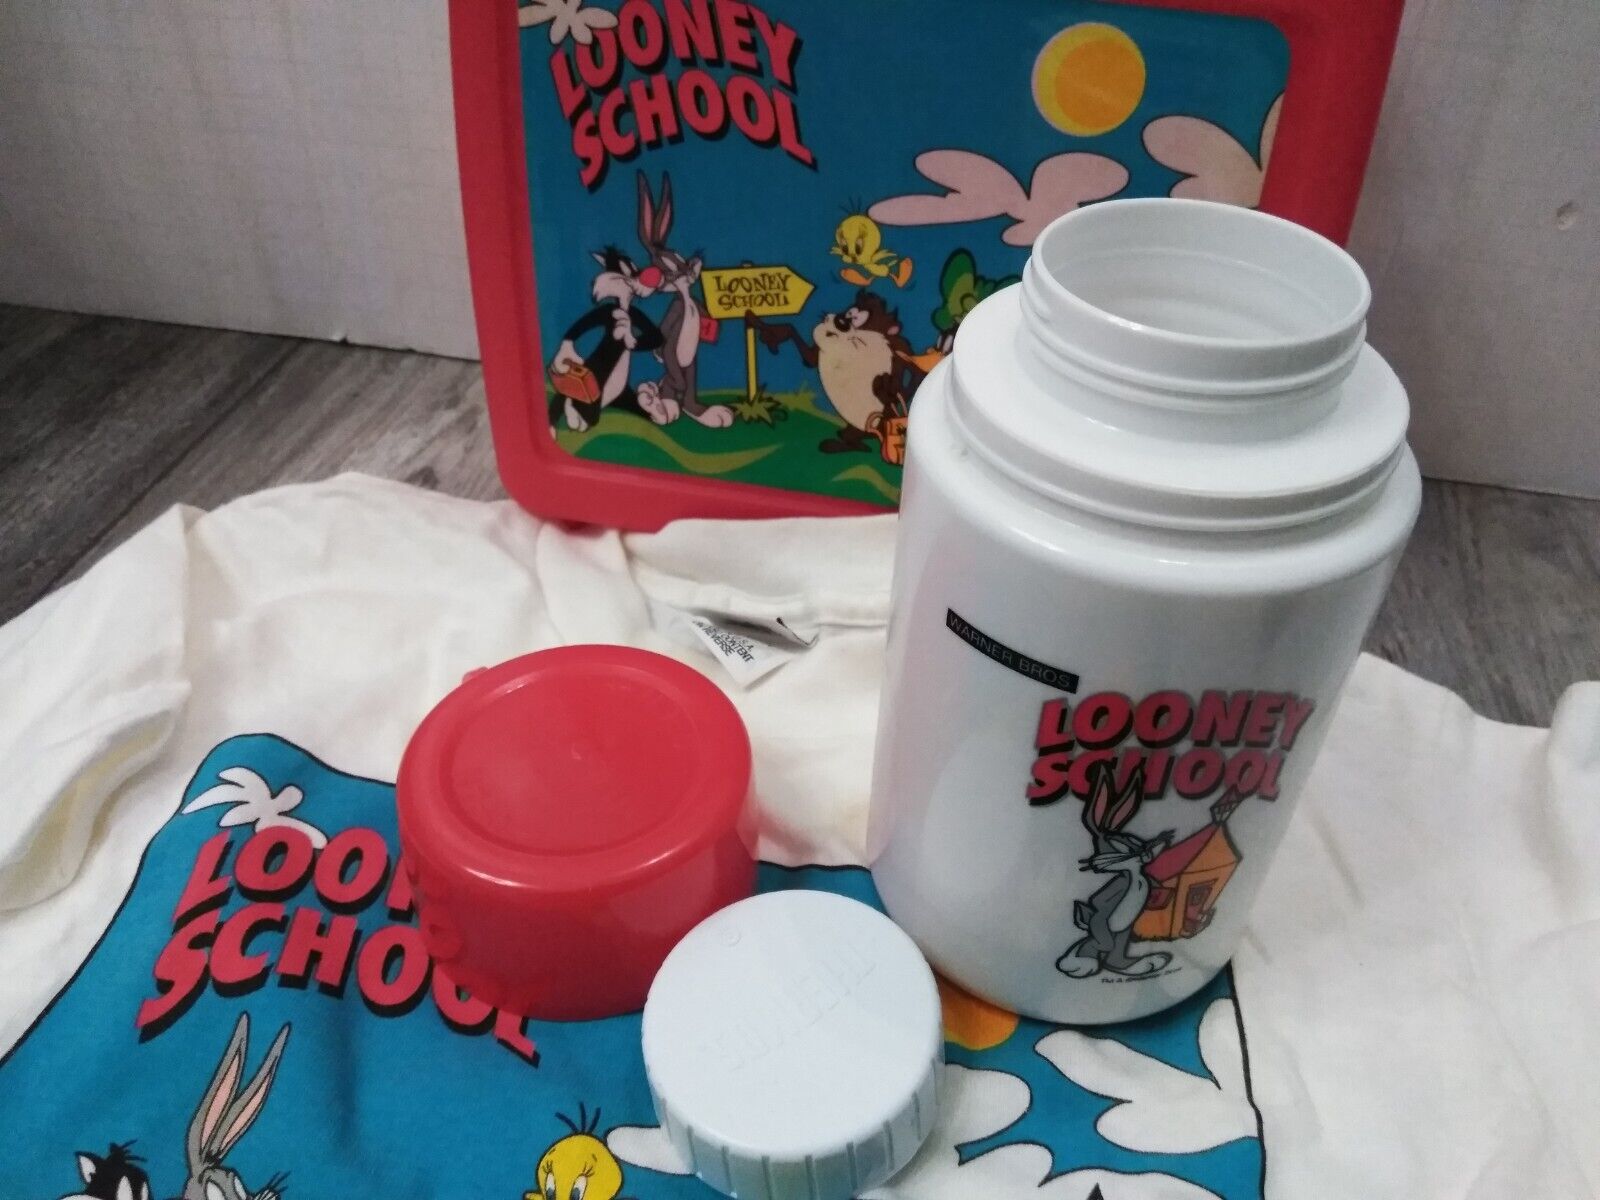 N.O.S. WARNER BROS. 1990'S Looney Tunes, Looney School RED Lunchbox W/ T-SHIRT Thermos - фотография #6